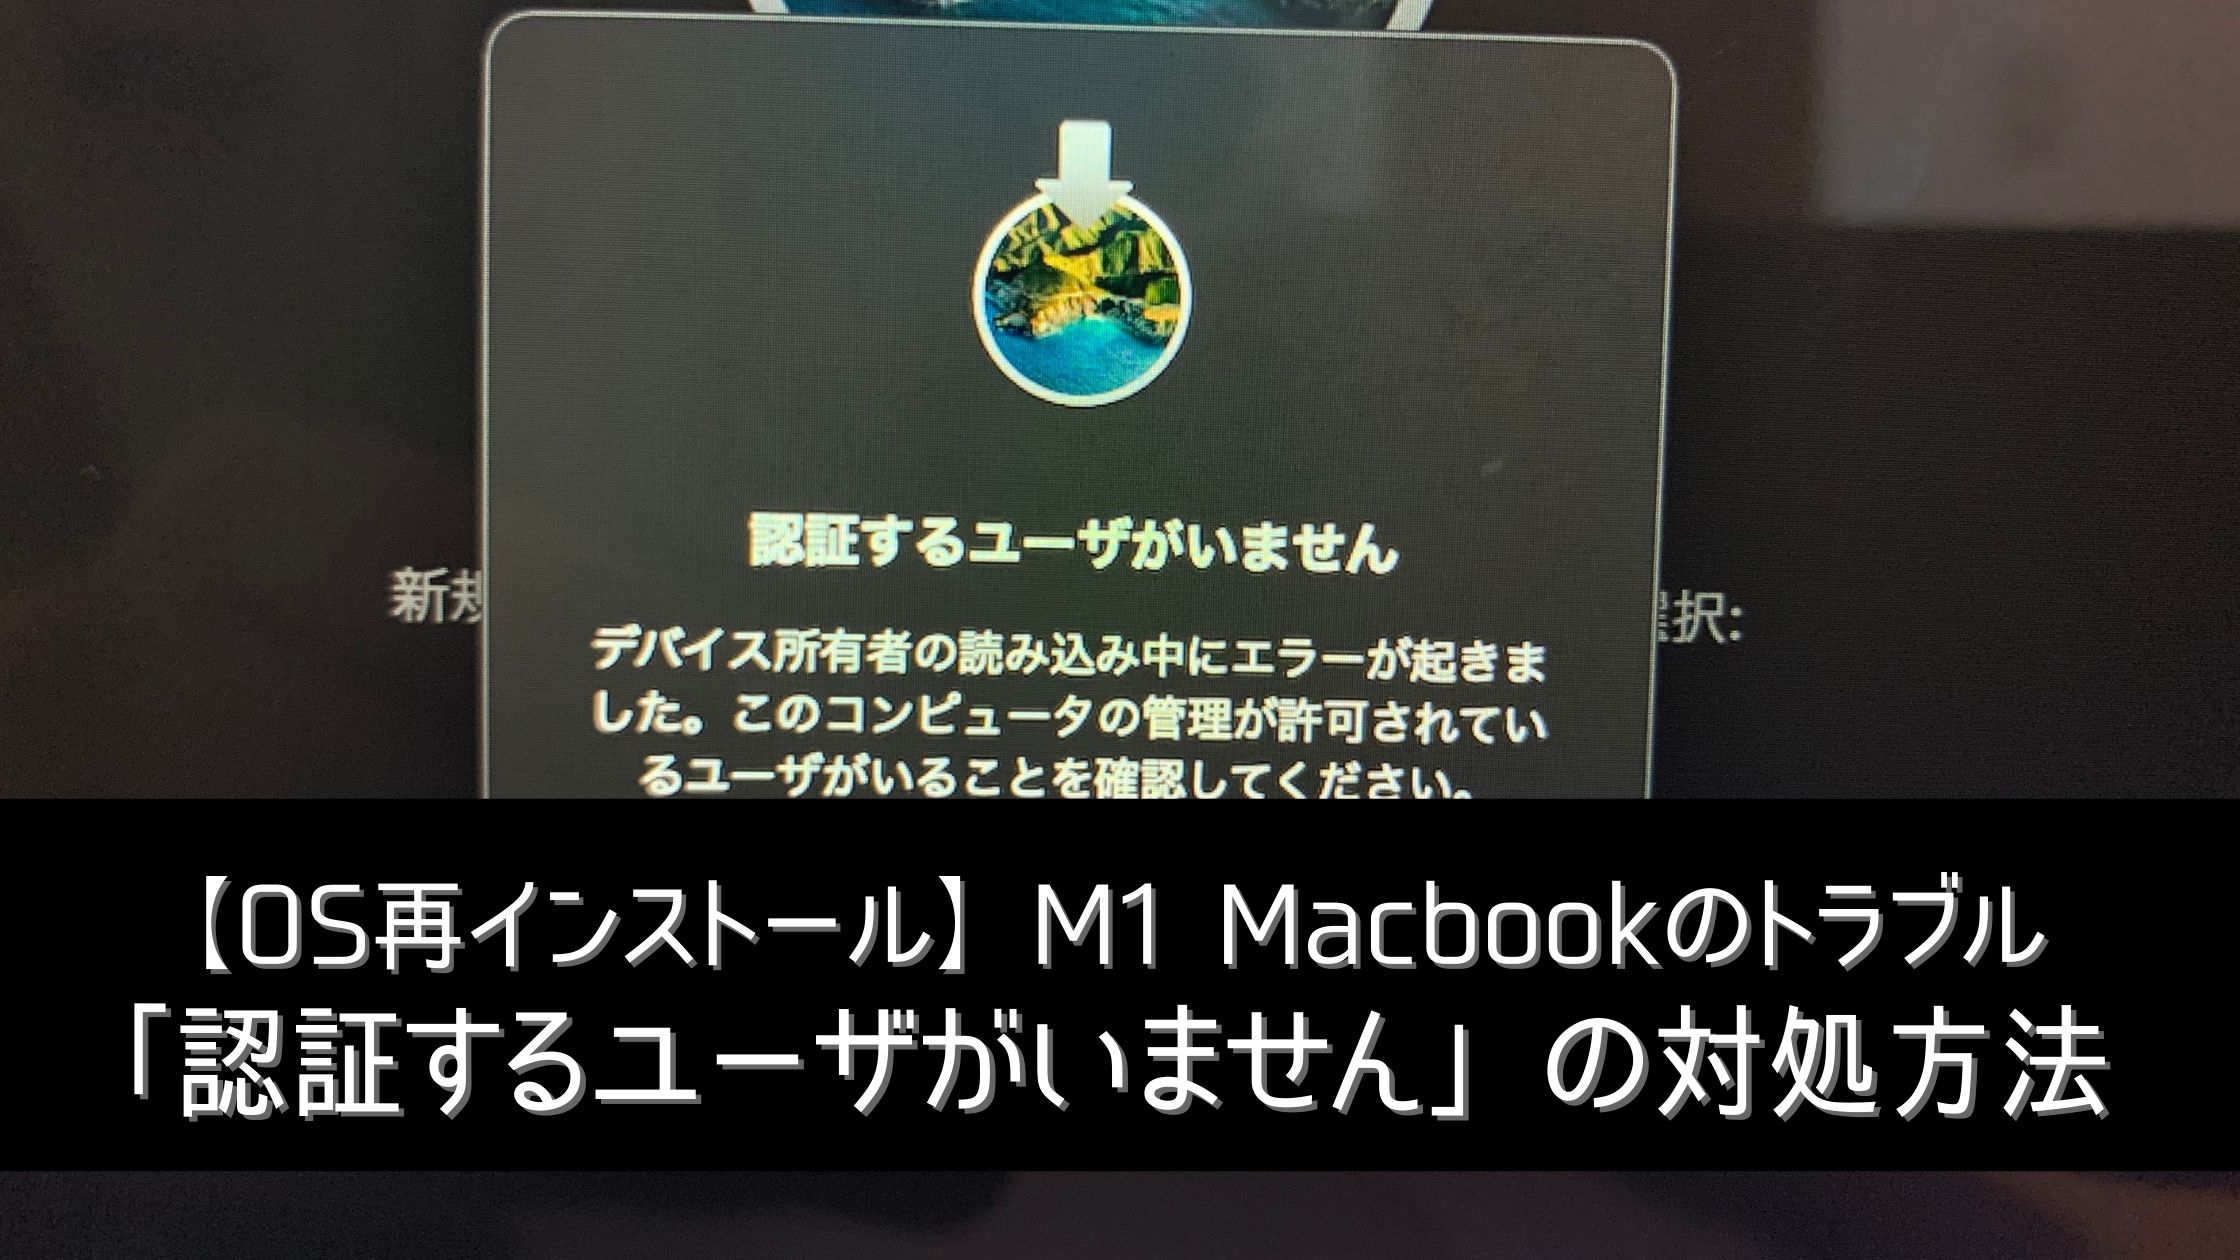 M1 Macbook AirのOS再インストール時のトラブル「認証するユーザがいま 